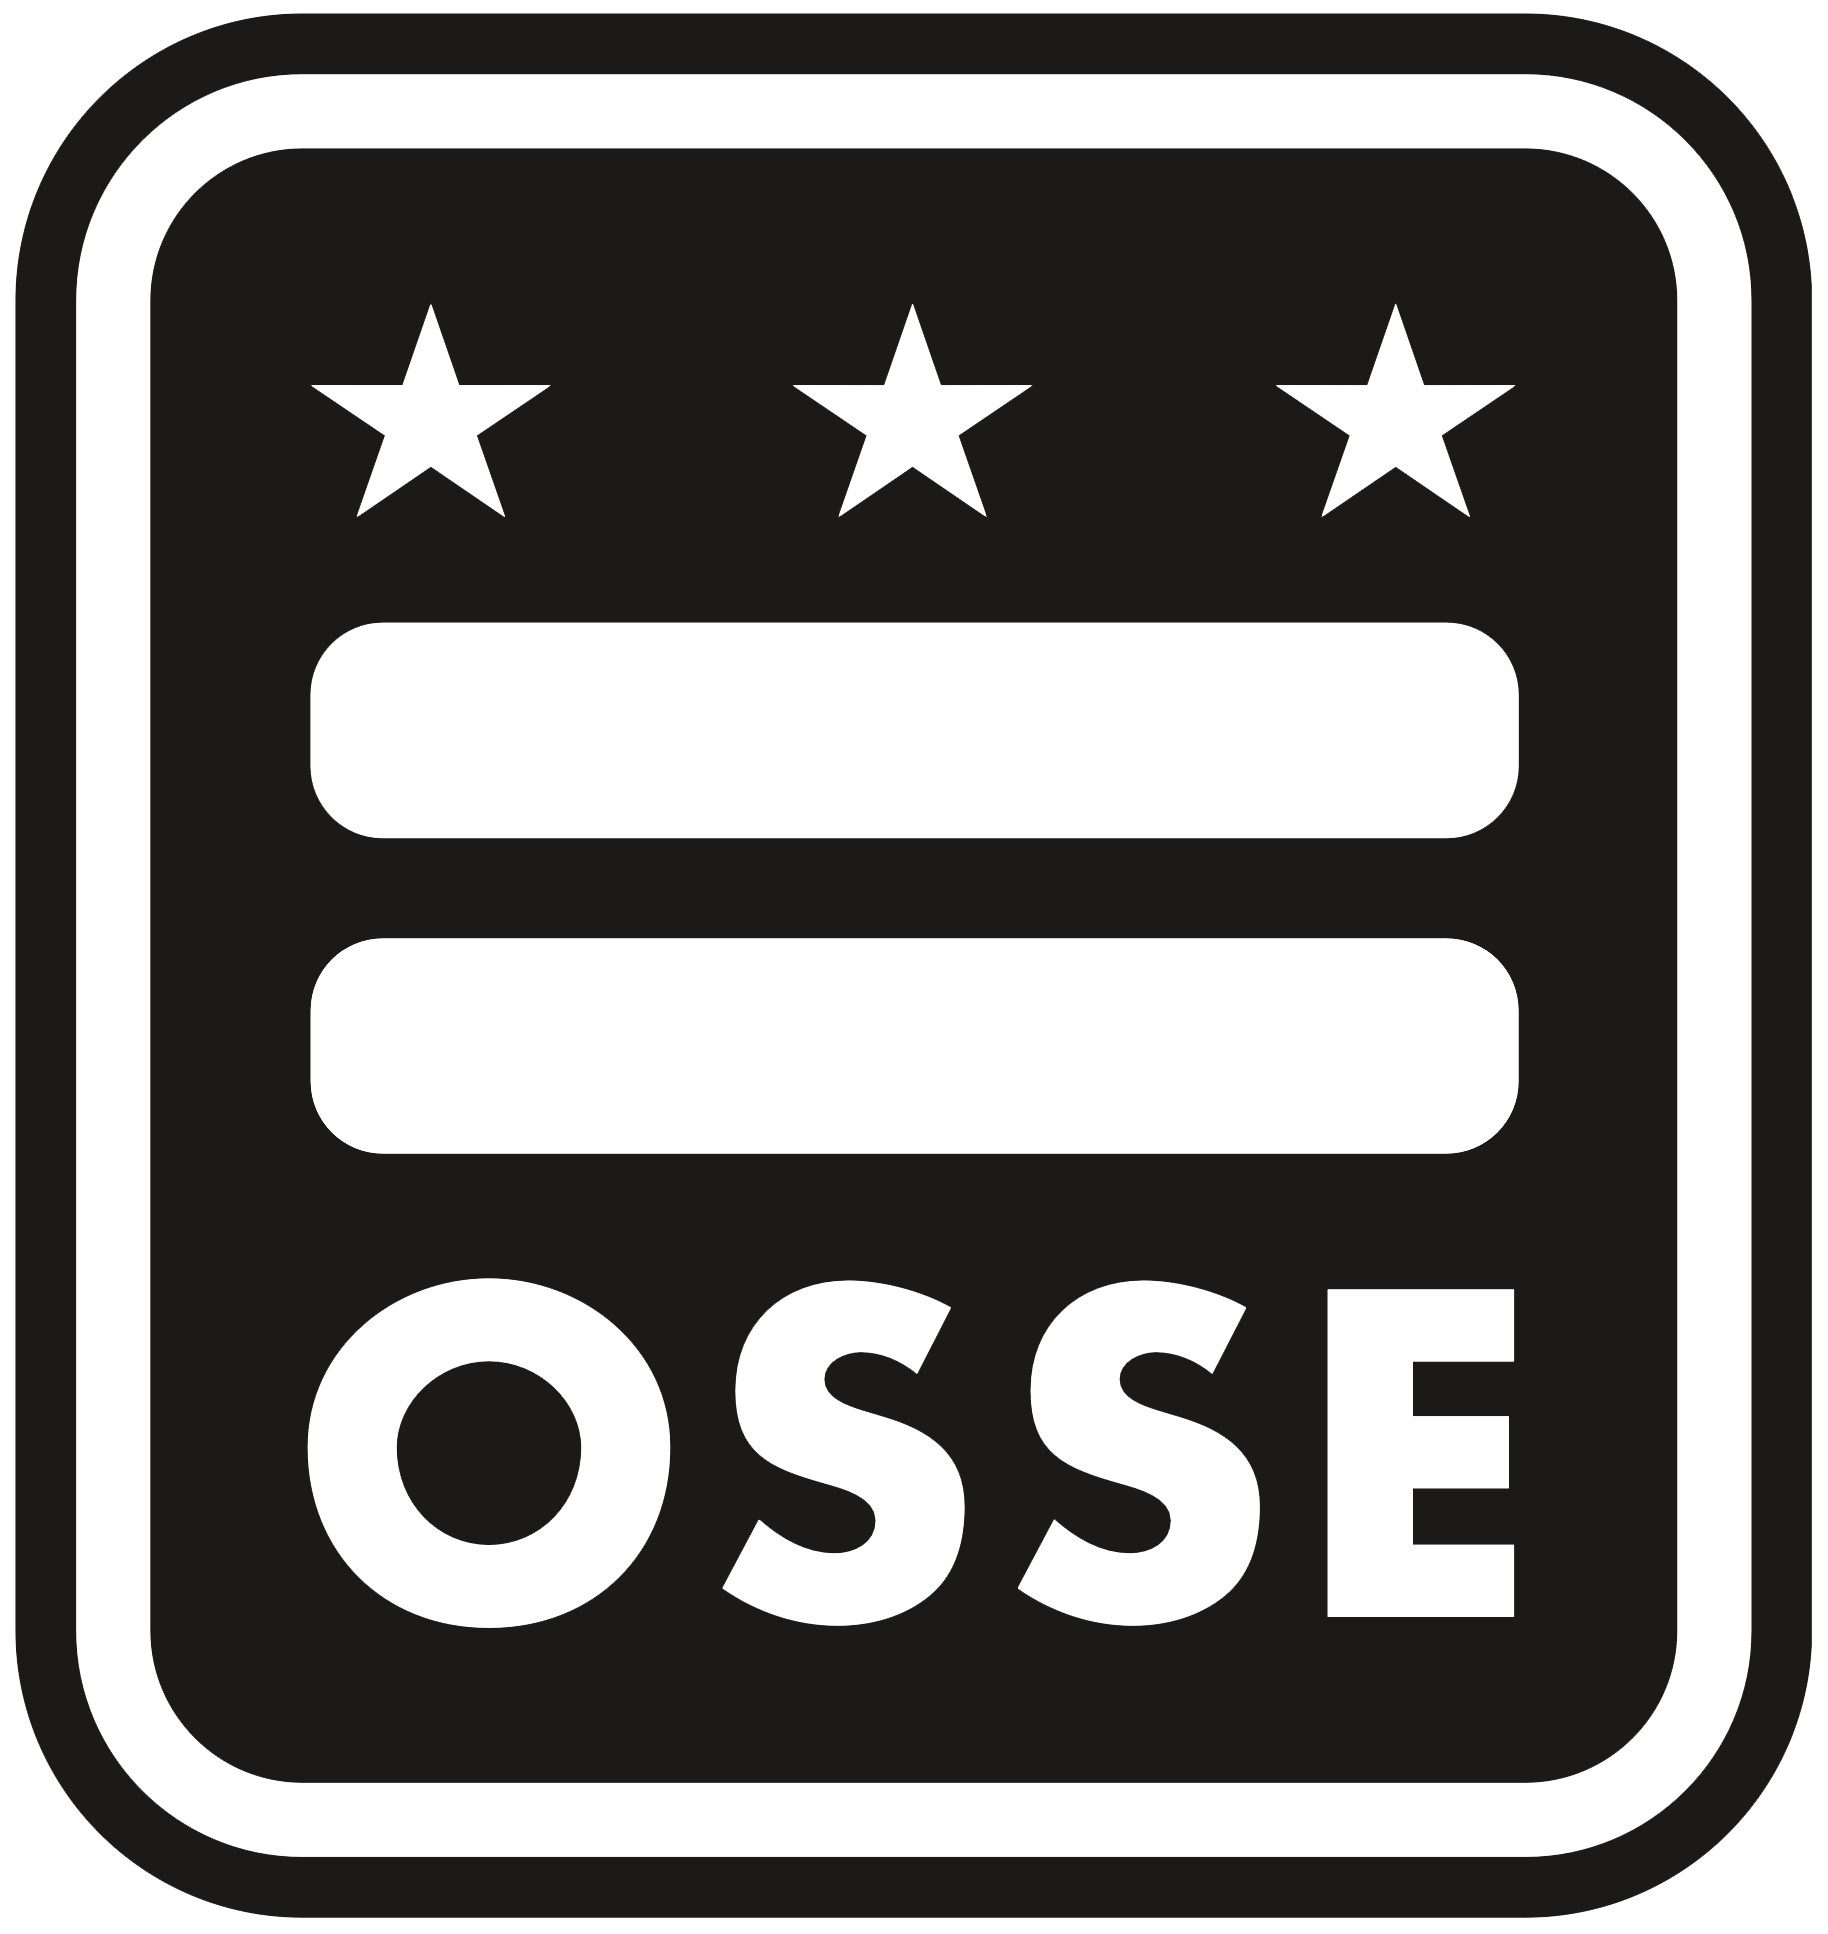 OSSE logo